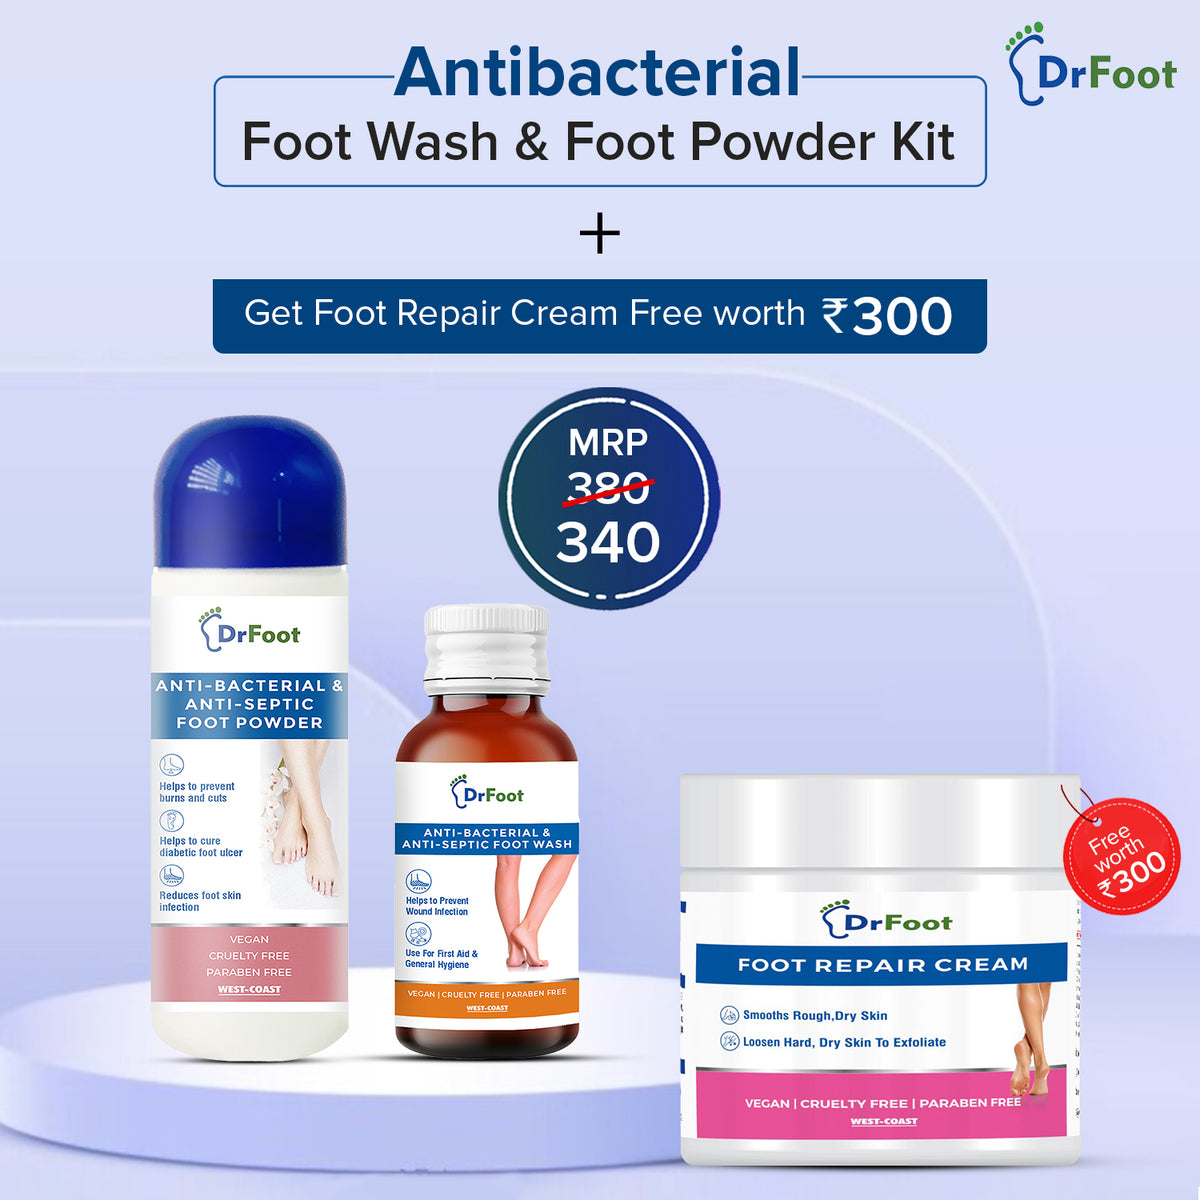 Buy Antiseptic Antibacterial Foot Wash & Foot Powder Get 1 Foot Repair Cream Free